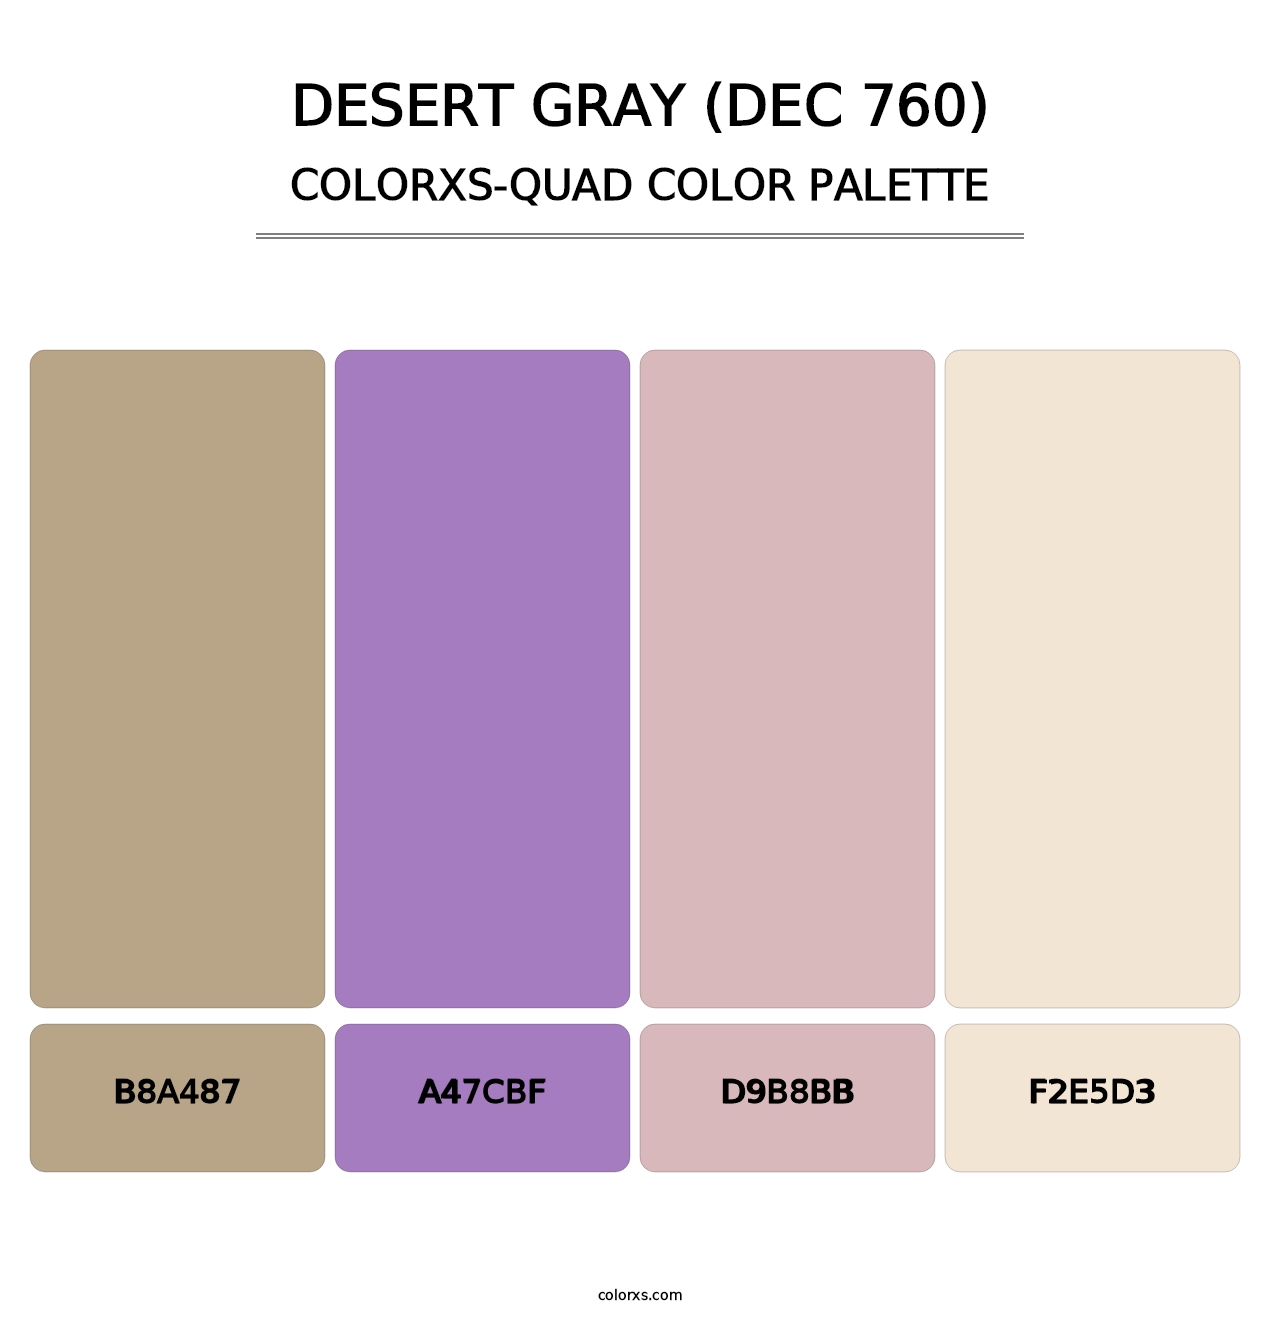 Desert Gray (DEC 760) - Colorxs Quad Palette